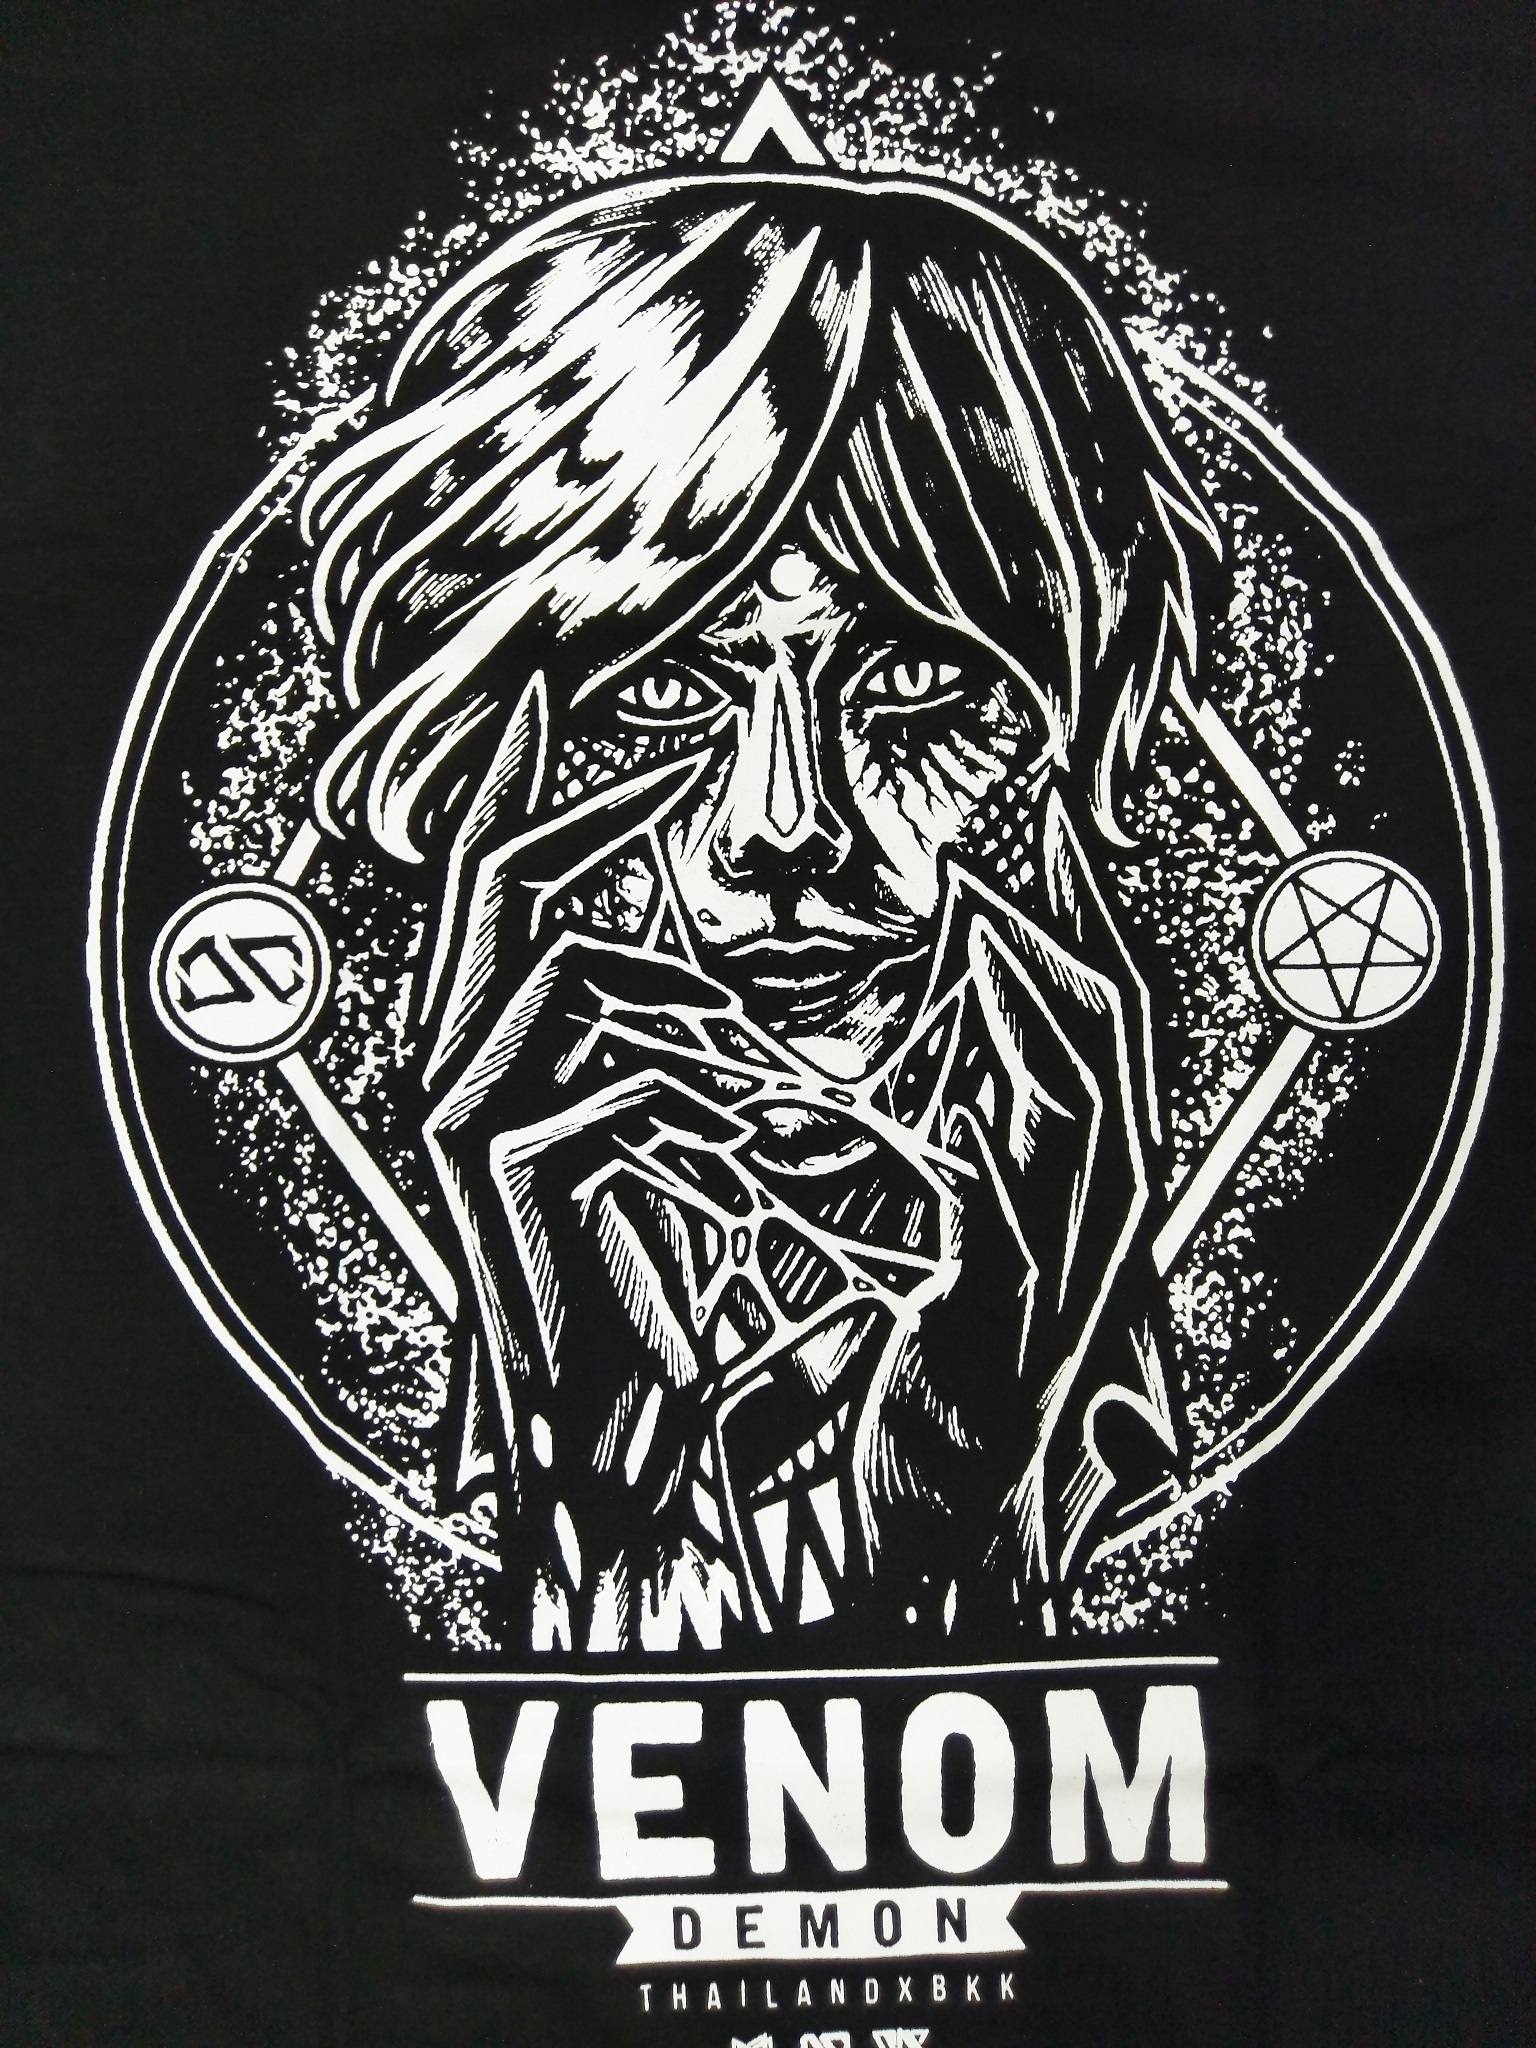 Biểu tượng của Venom đã được in trên chiếc áo thun của bạn, tạo ra phong cách thời trang độc đáo mà không ai có thể bỏ qua. Áo thun Venom 3D sẽ là món đồ giúp bạn thể hiện sự đam mê và cá tính của mình.